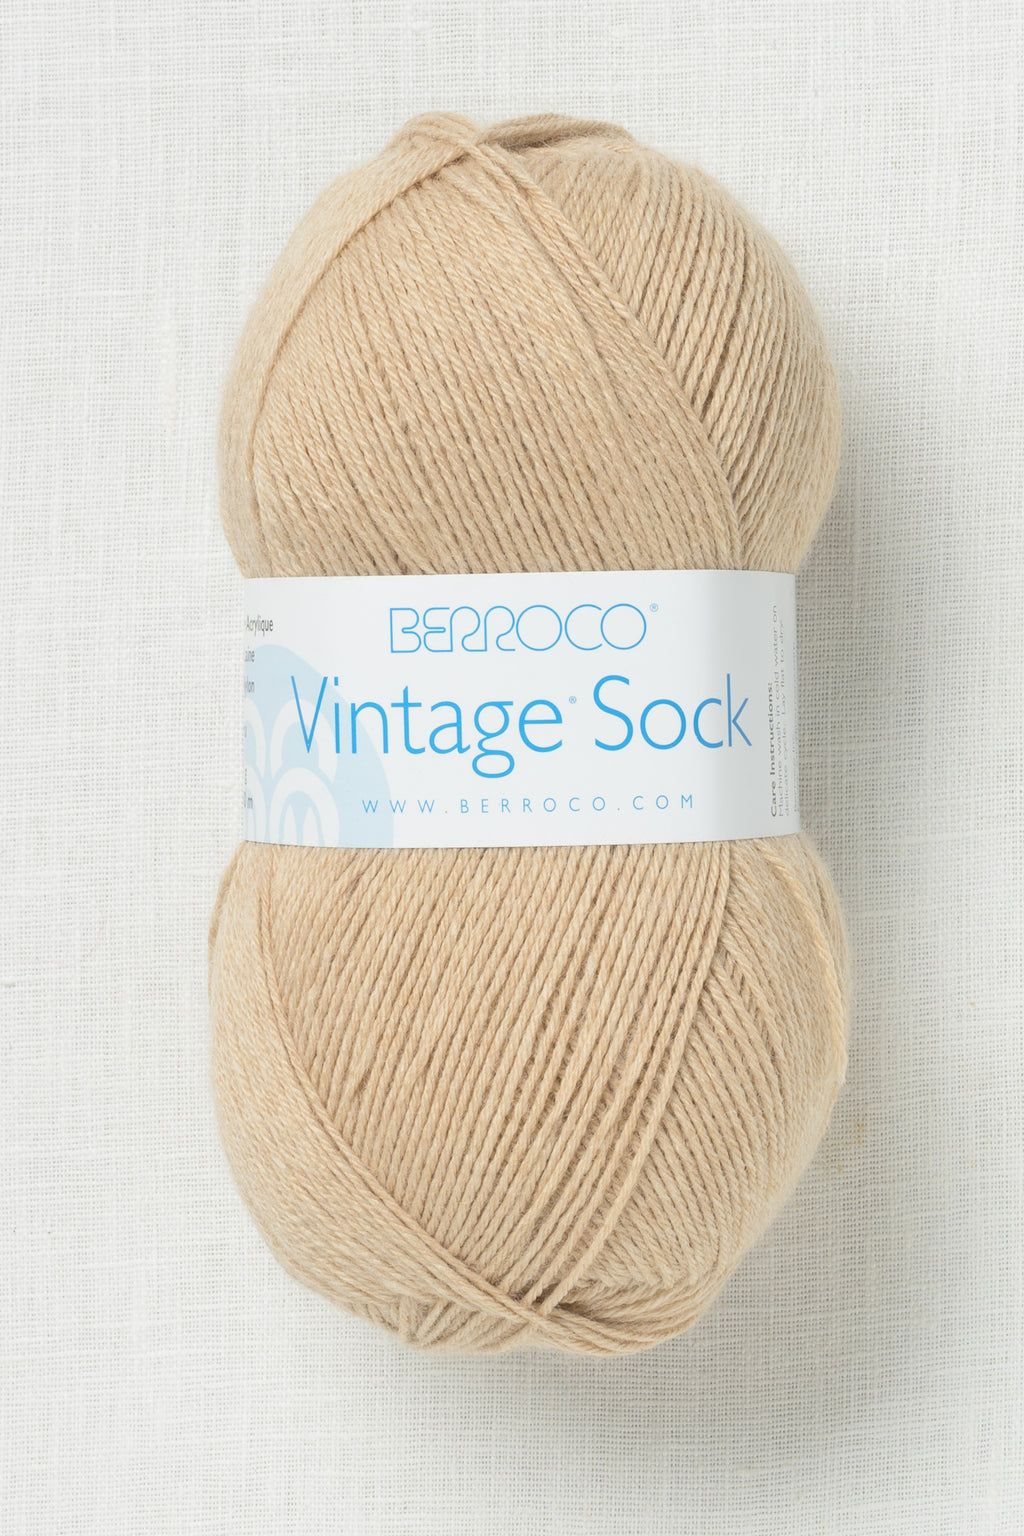 Berroco Vintage Sock 12104 Mushroom